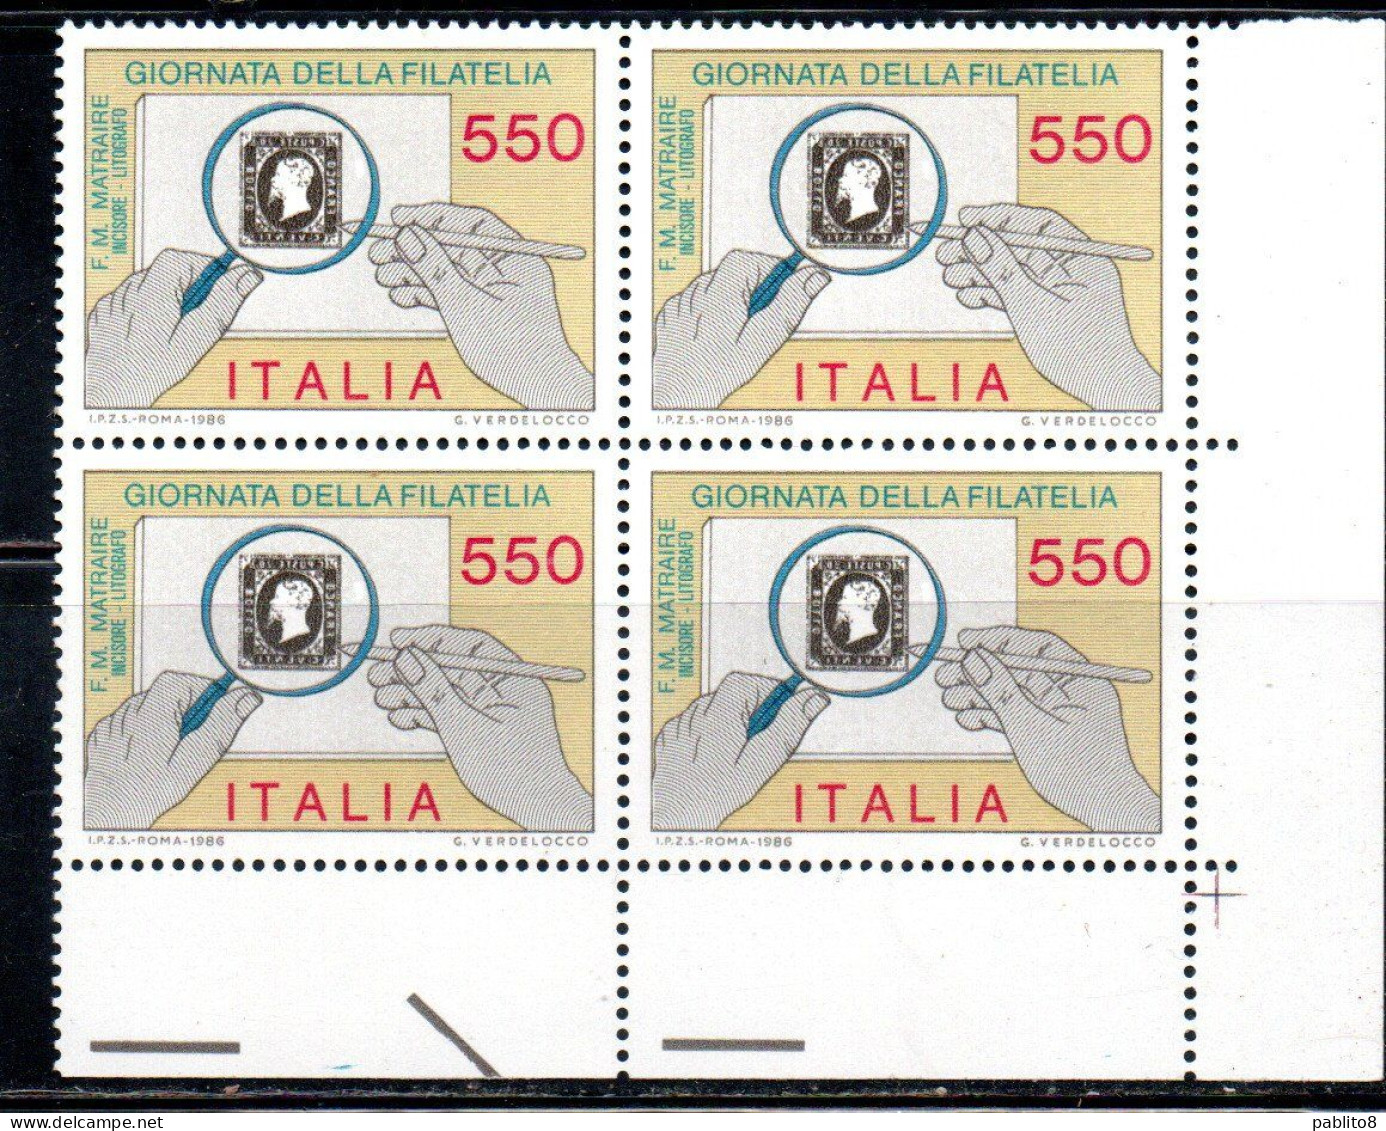 ITALIA REPUBBLICA ITALY REPUBLIC 1986 GIORNATA DELLA FILATELIA STAMP DAY QUARTINA ANGOLO DI FOGLIO BLOCK MNH - 1981-90: Mint/hinged